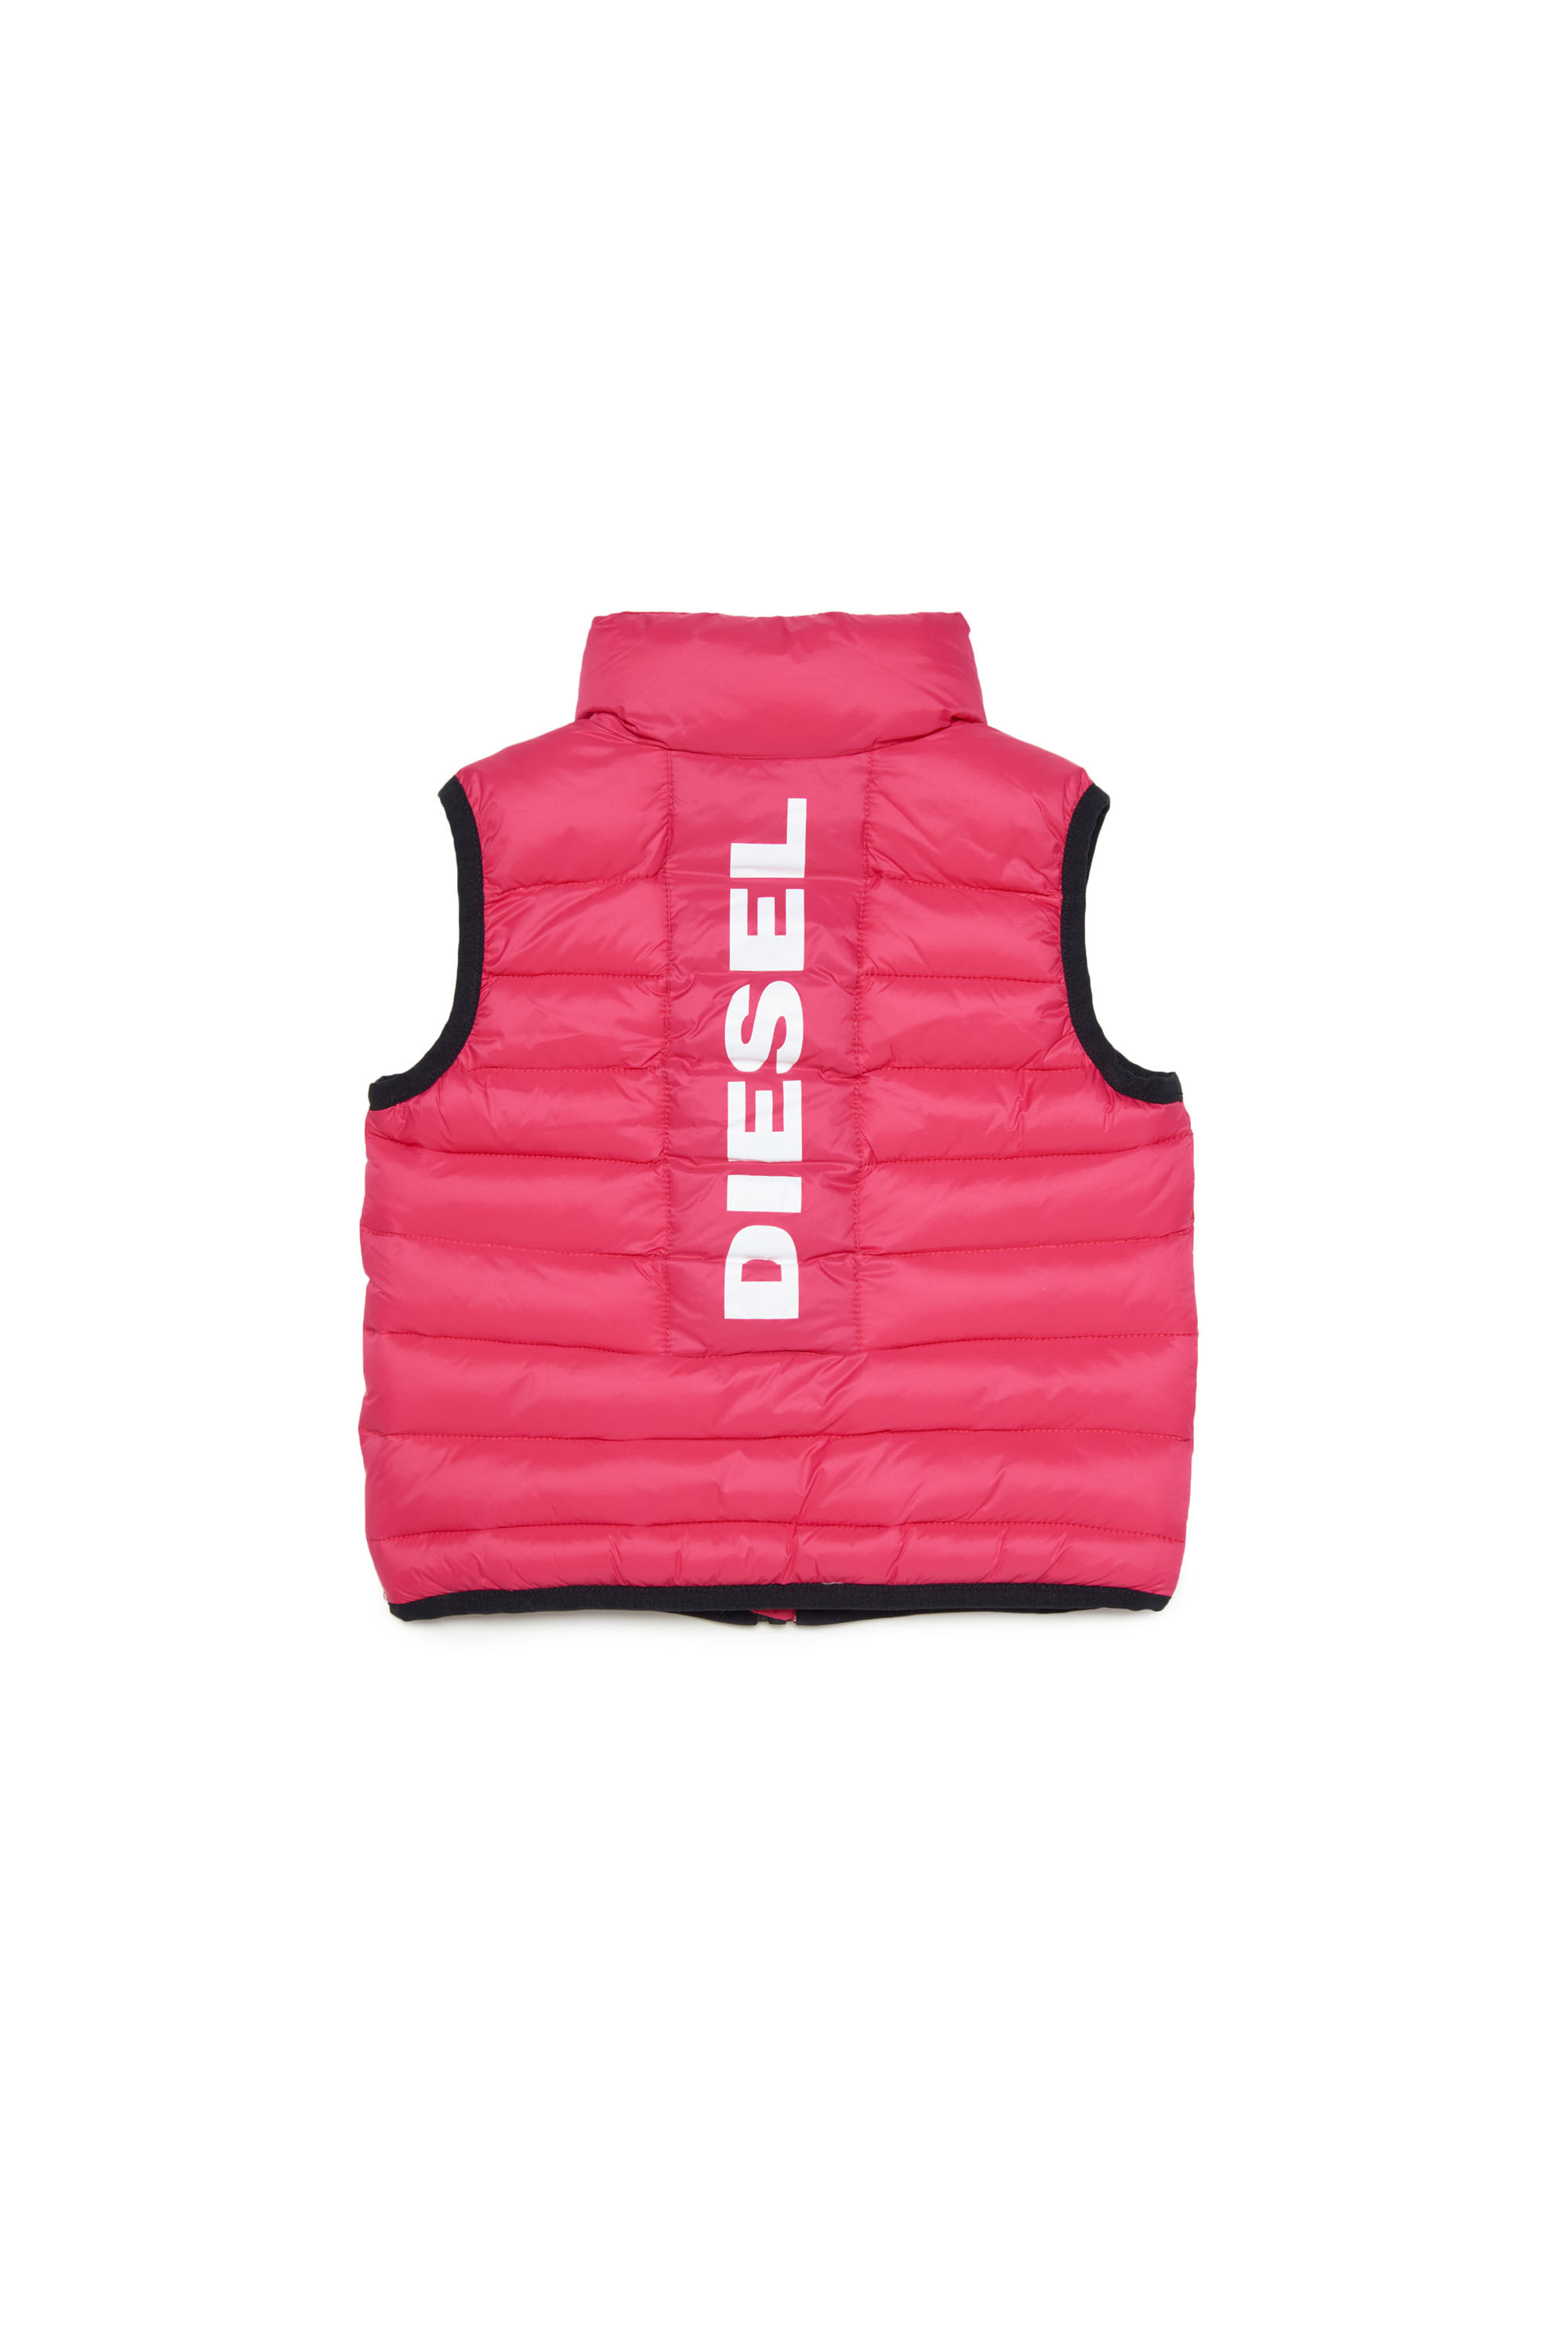 Diesel - JOLICE-SLB, Pink - Image 2